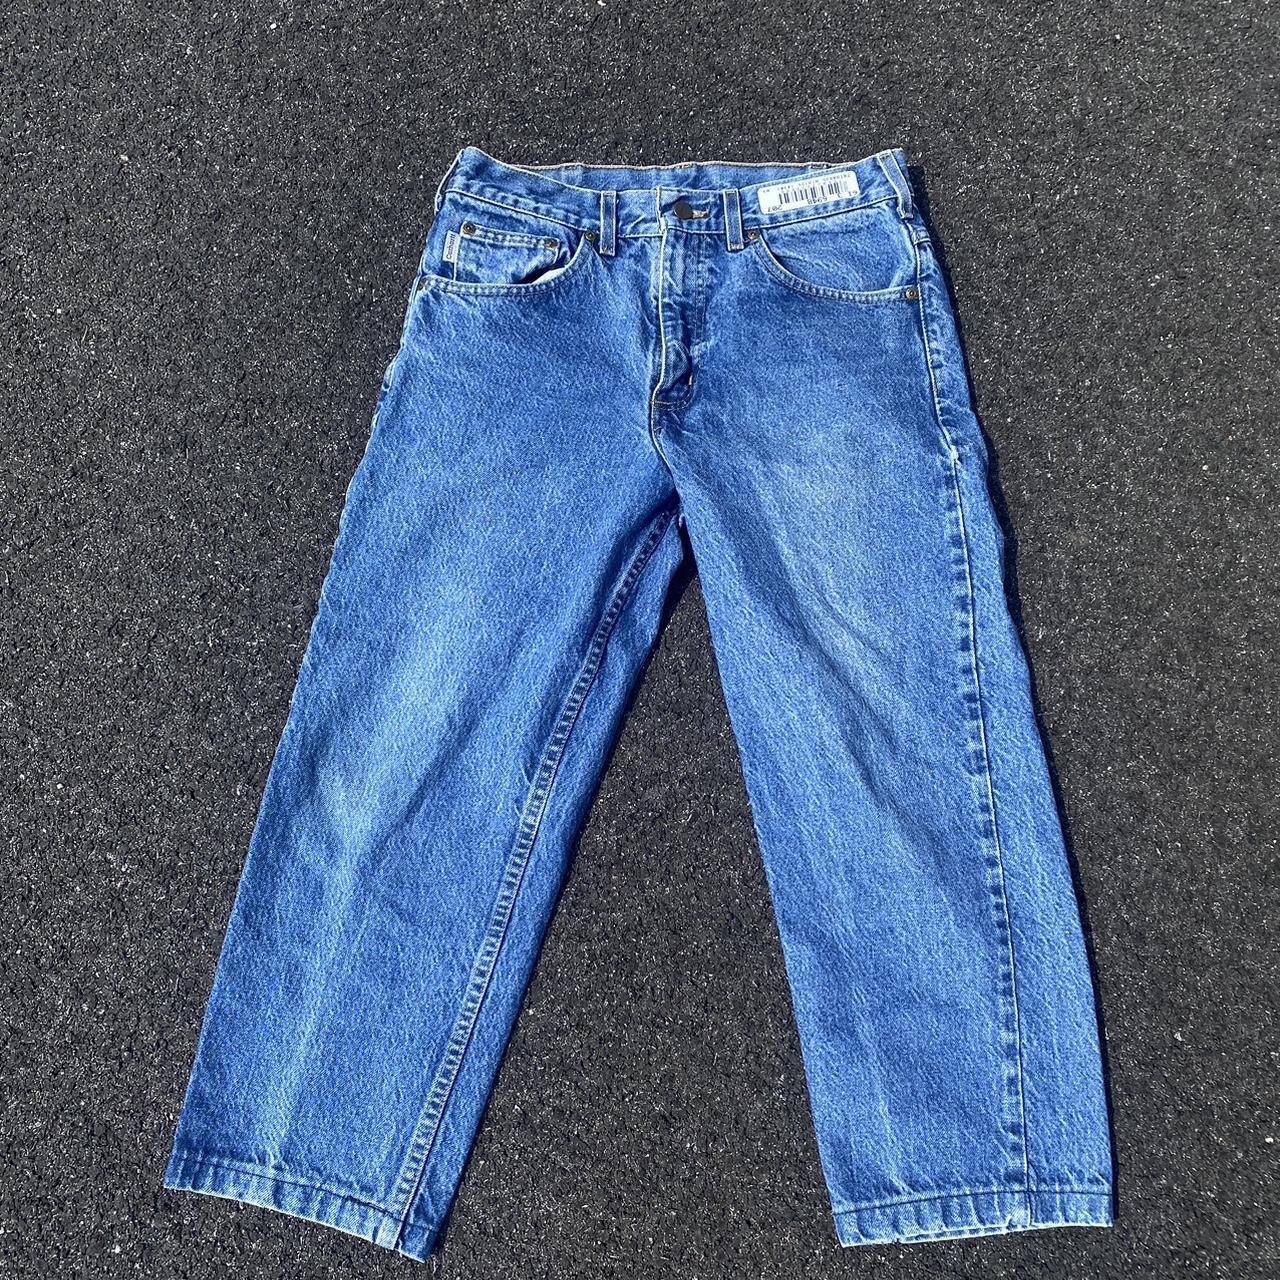 Highwater Carhartt Jeans (32x28) waist: 32 in Leg... - Depop